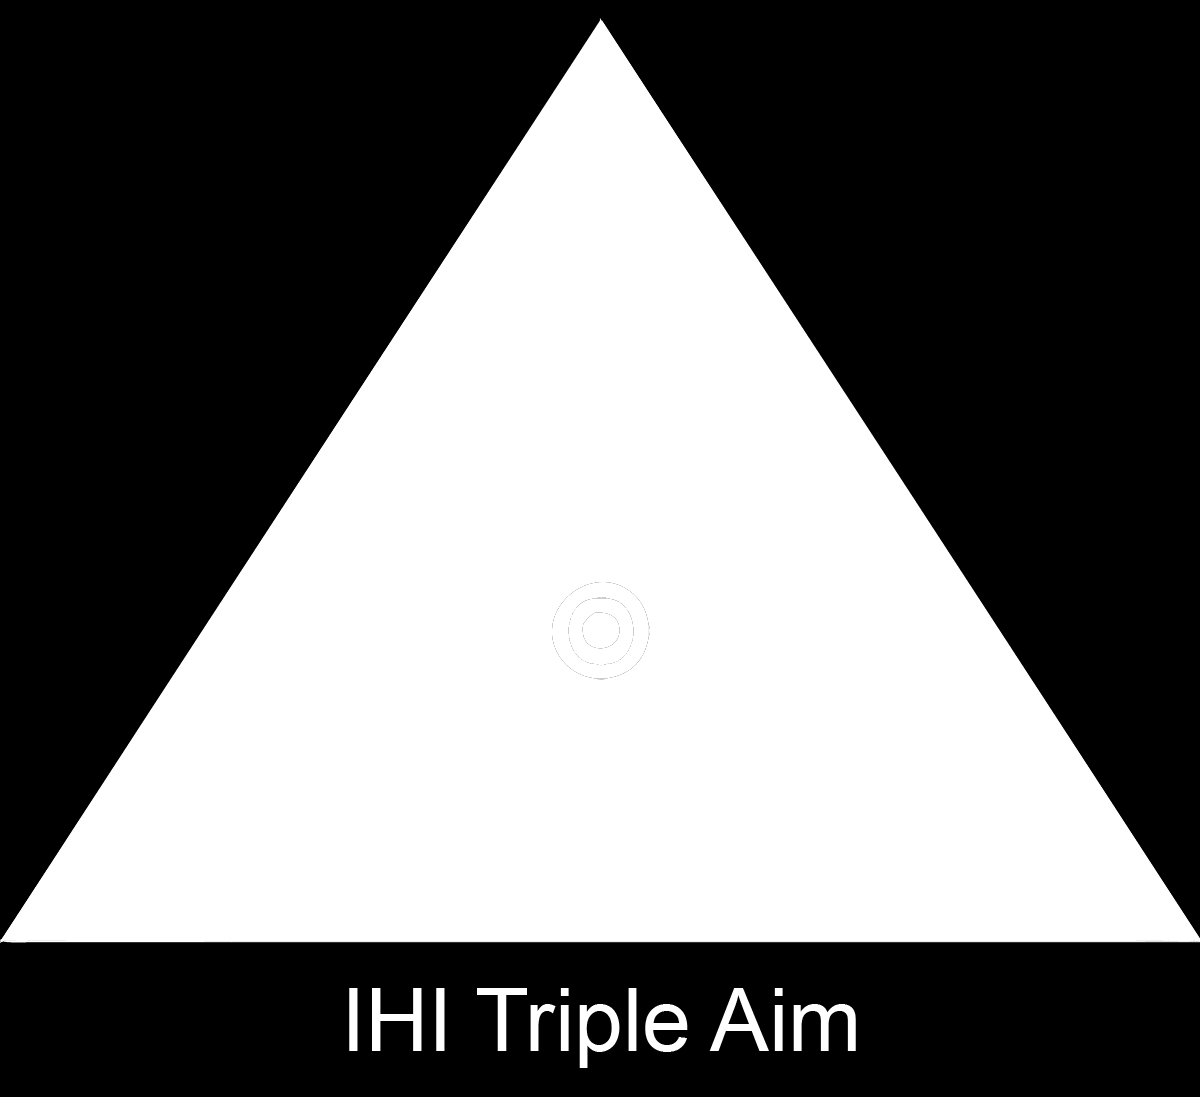 Triple